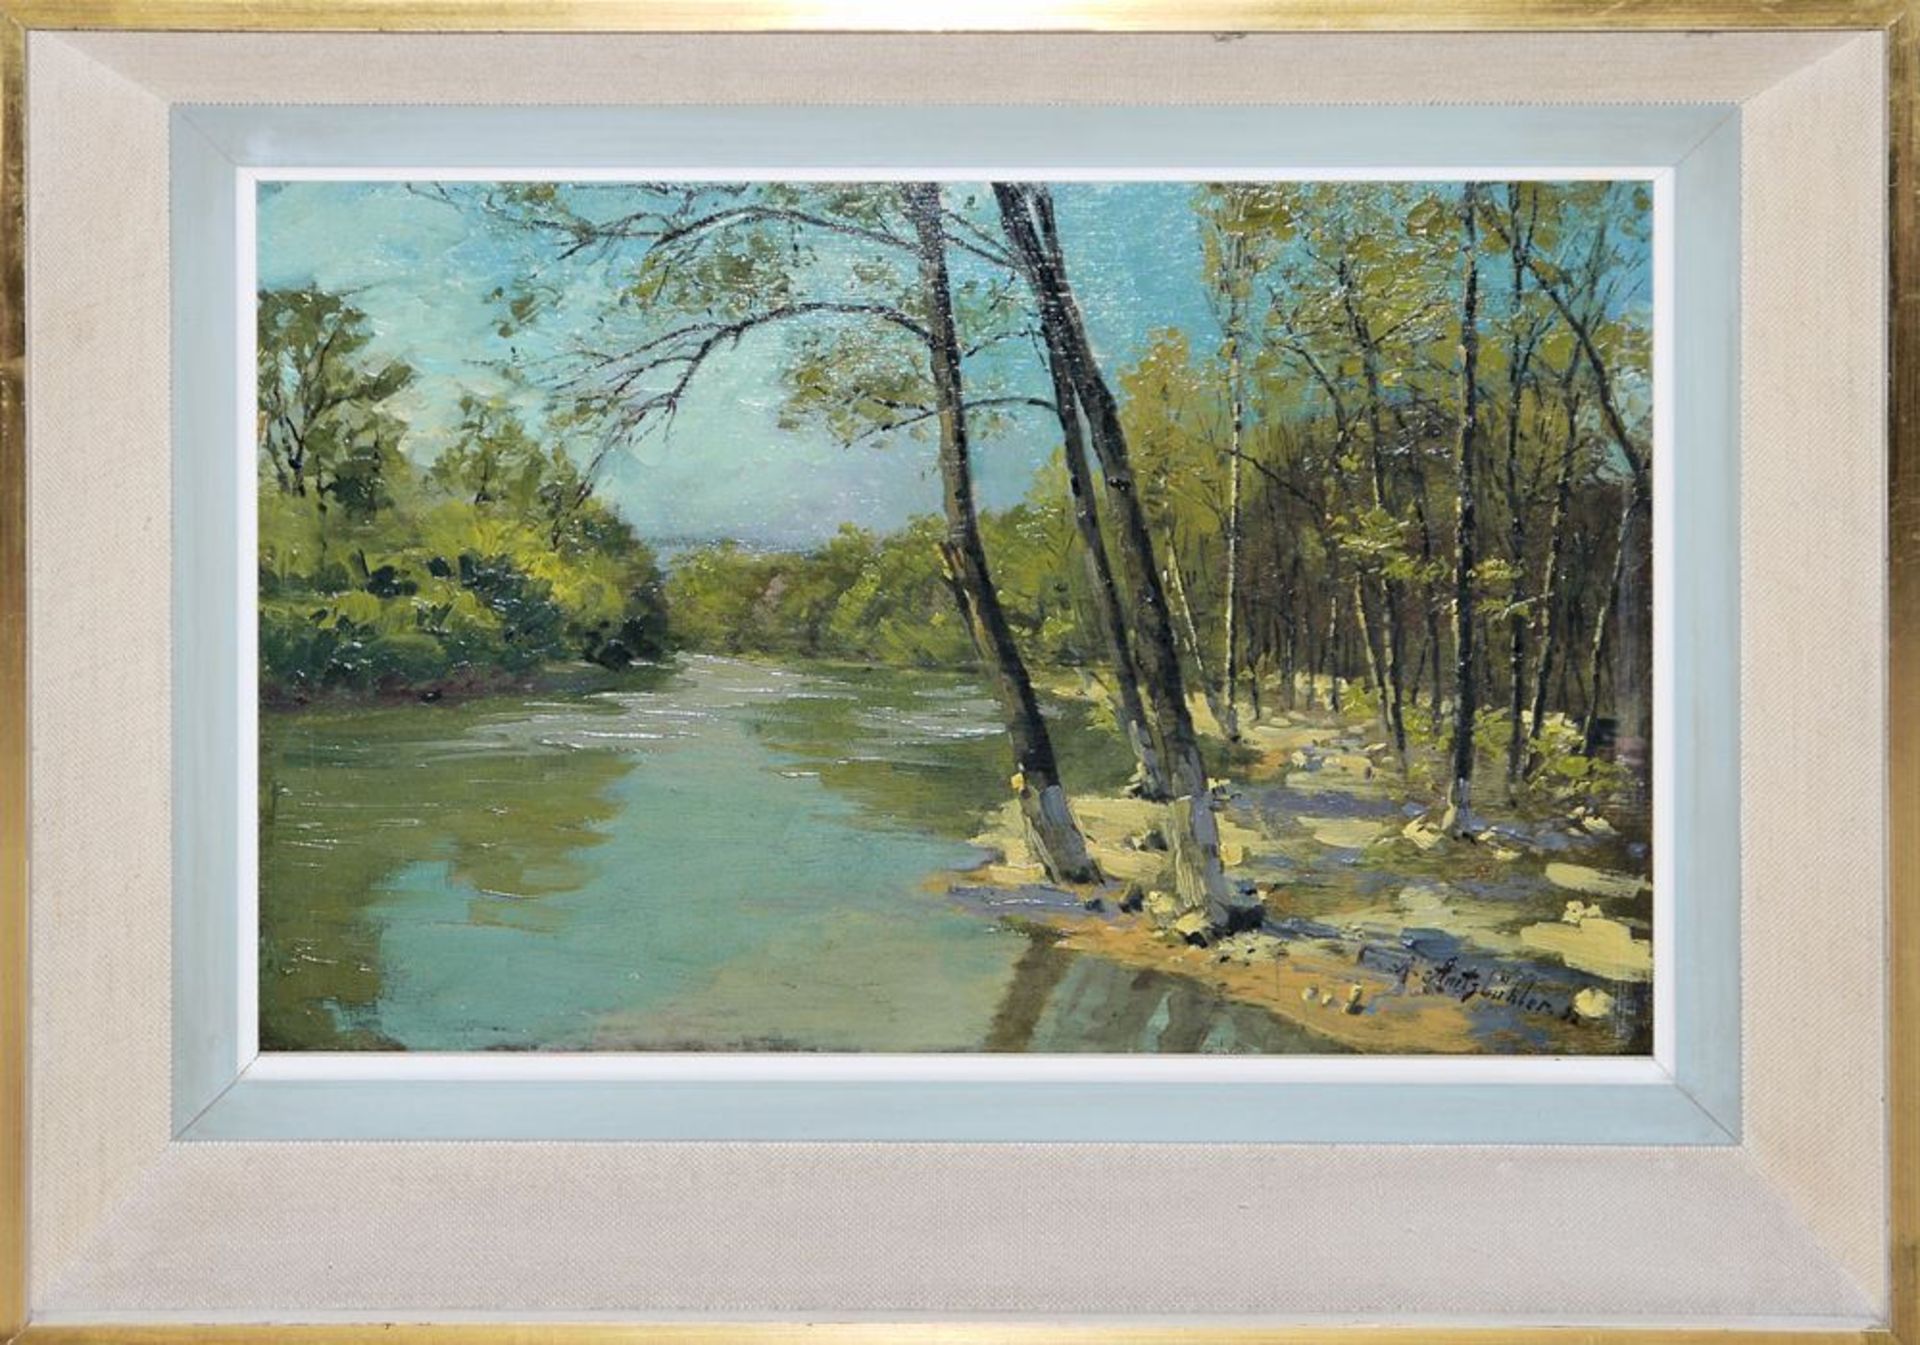 6x badische Künstler bzw. Landschaften, 1900 - Mitte 20. Jh., 6 Ölgemälde, alle gerahmt - Bild 2 aus 4